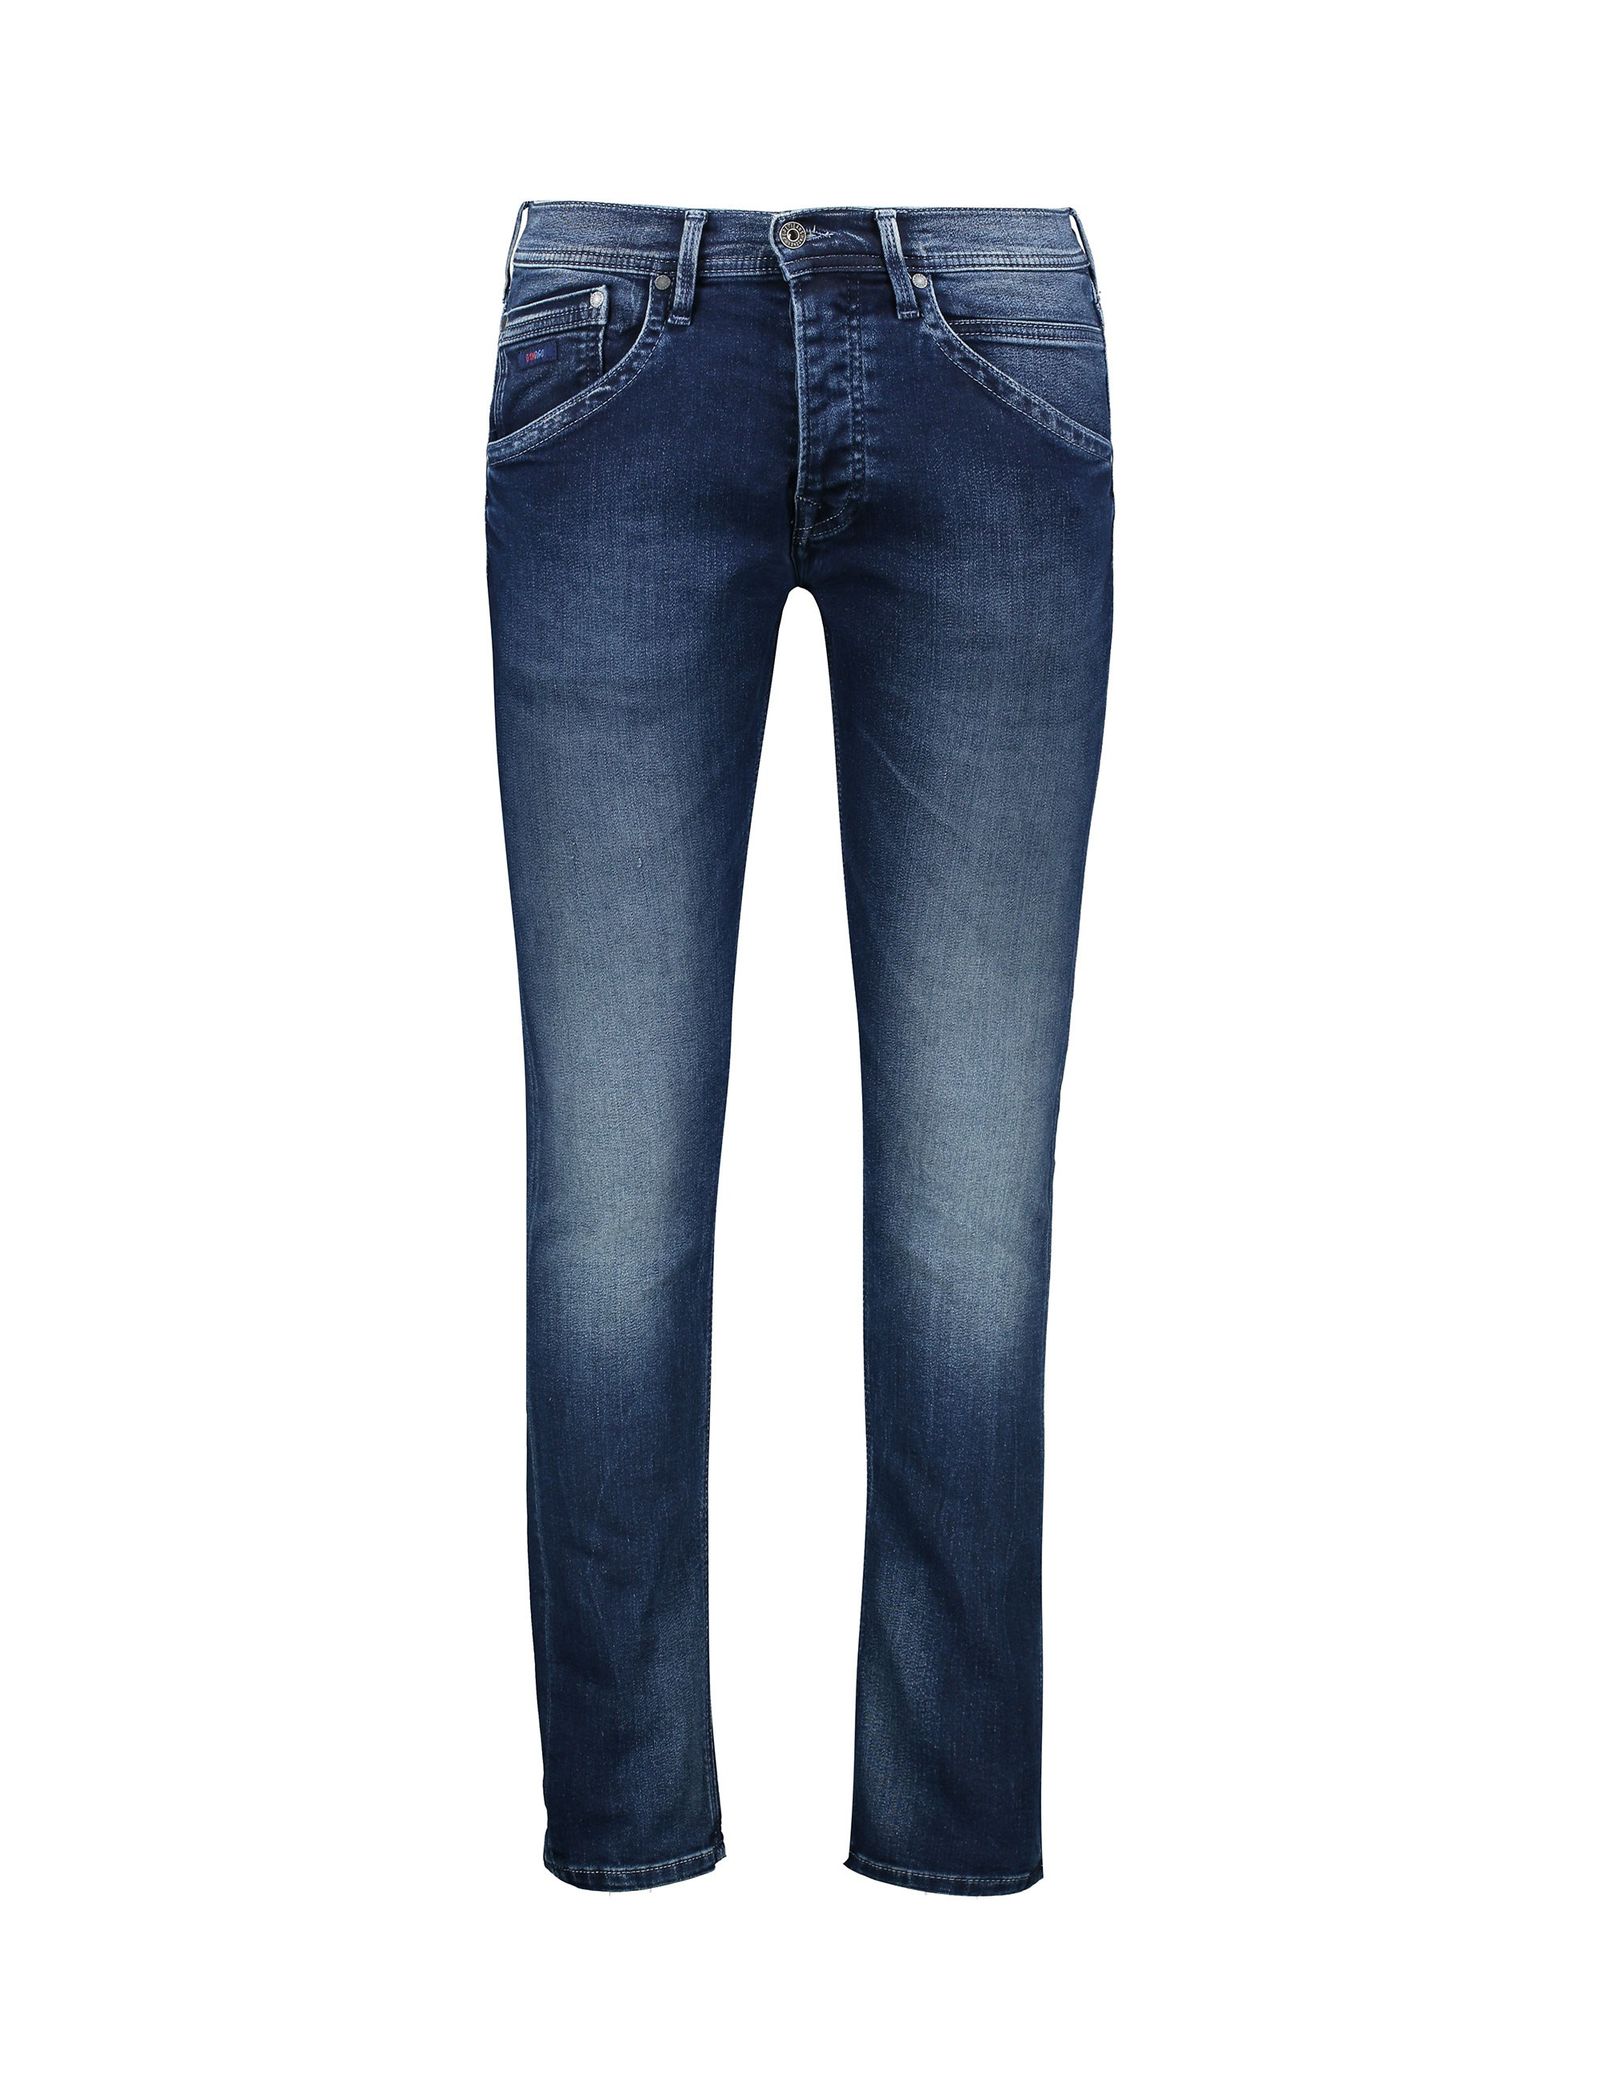 شلوار جین راسته مردانه TRACK - پپه جینز - آبي تيره - 2